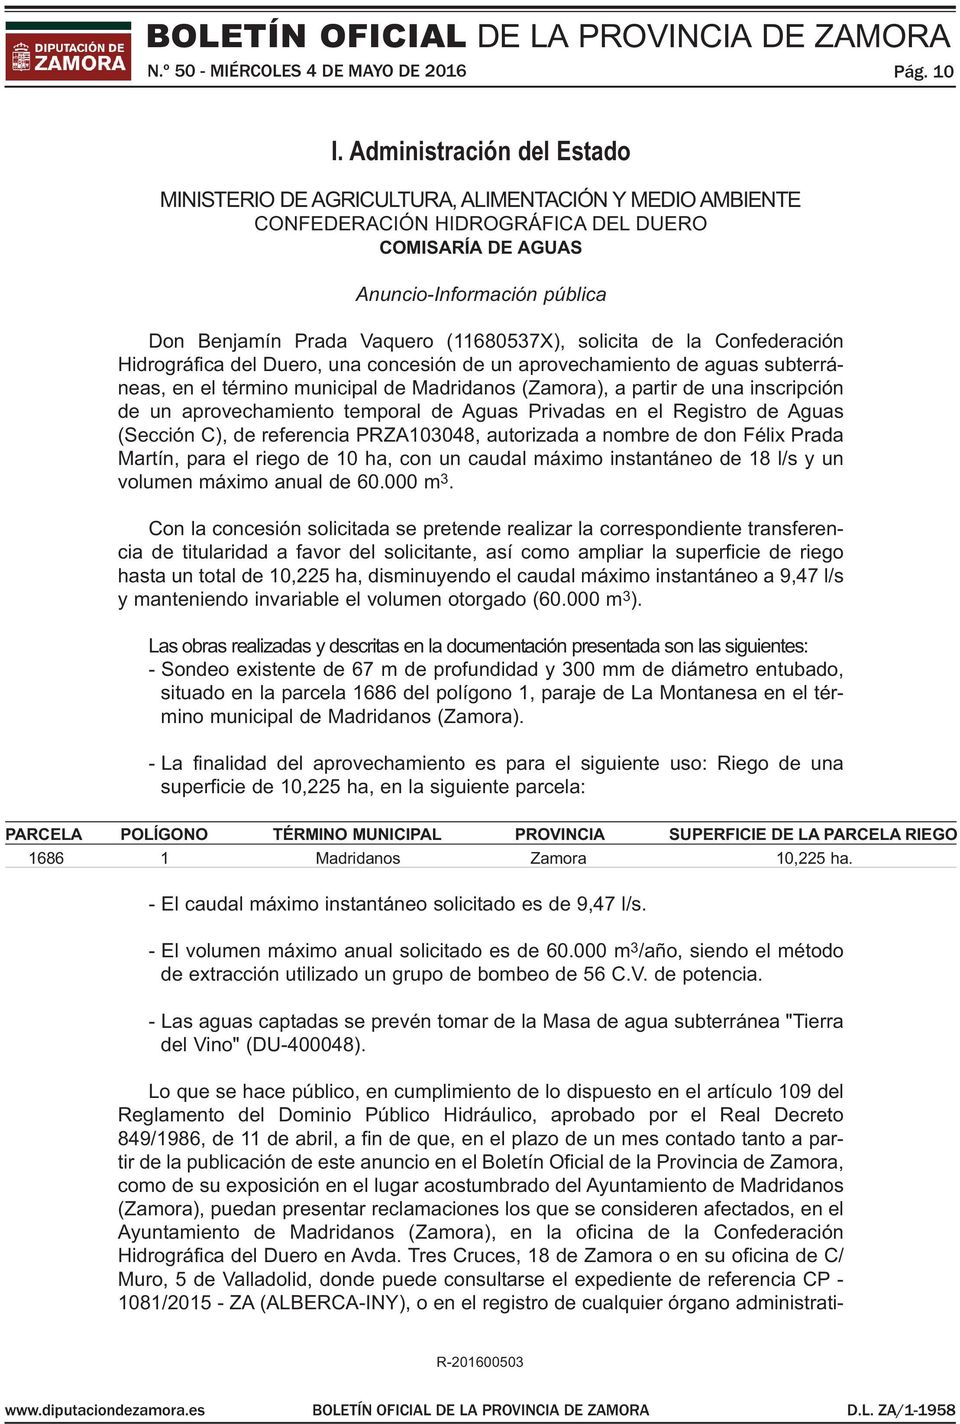 (11680537X), solicita de la confederación hidrográfica del duero, una concesión de un aprovechamiento de aguas subterráneas, en el término municipal de madridanos (Zamora), a partir de una